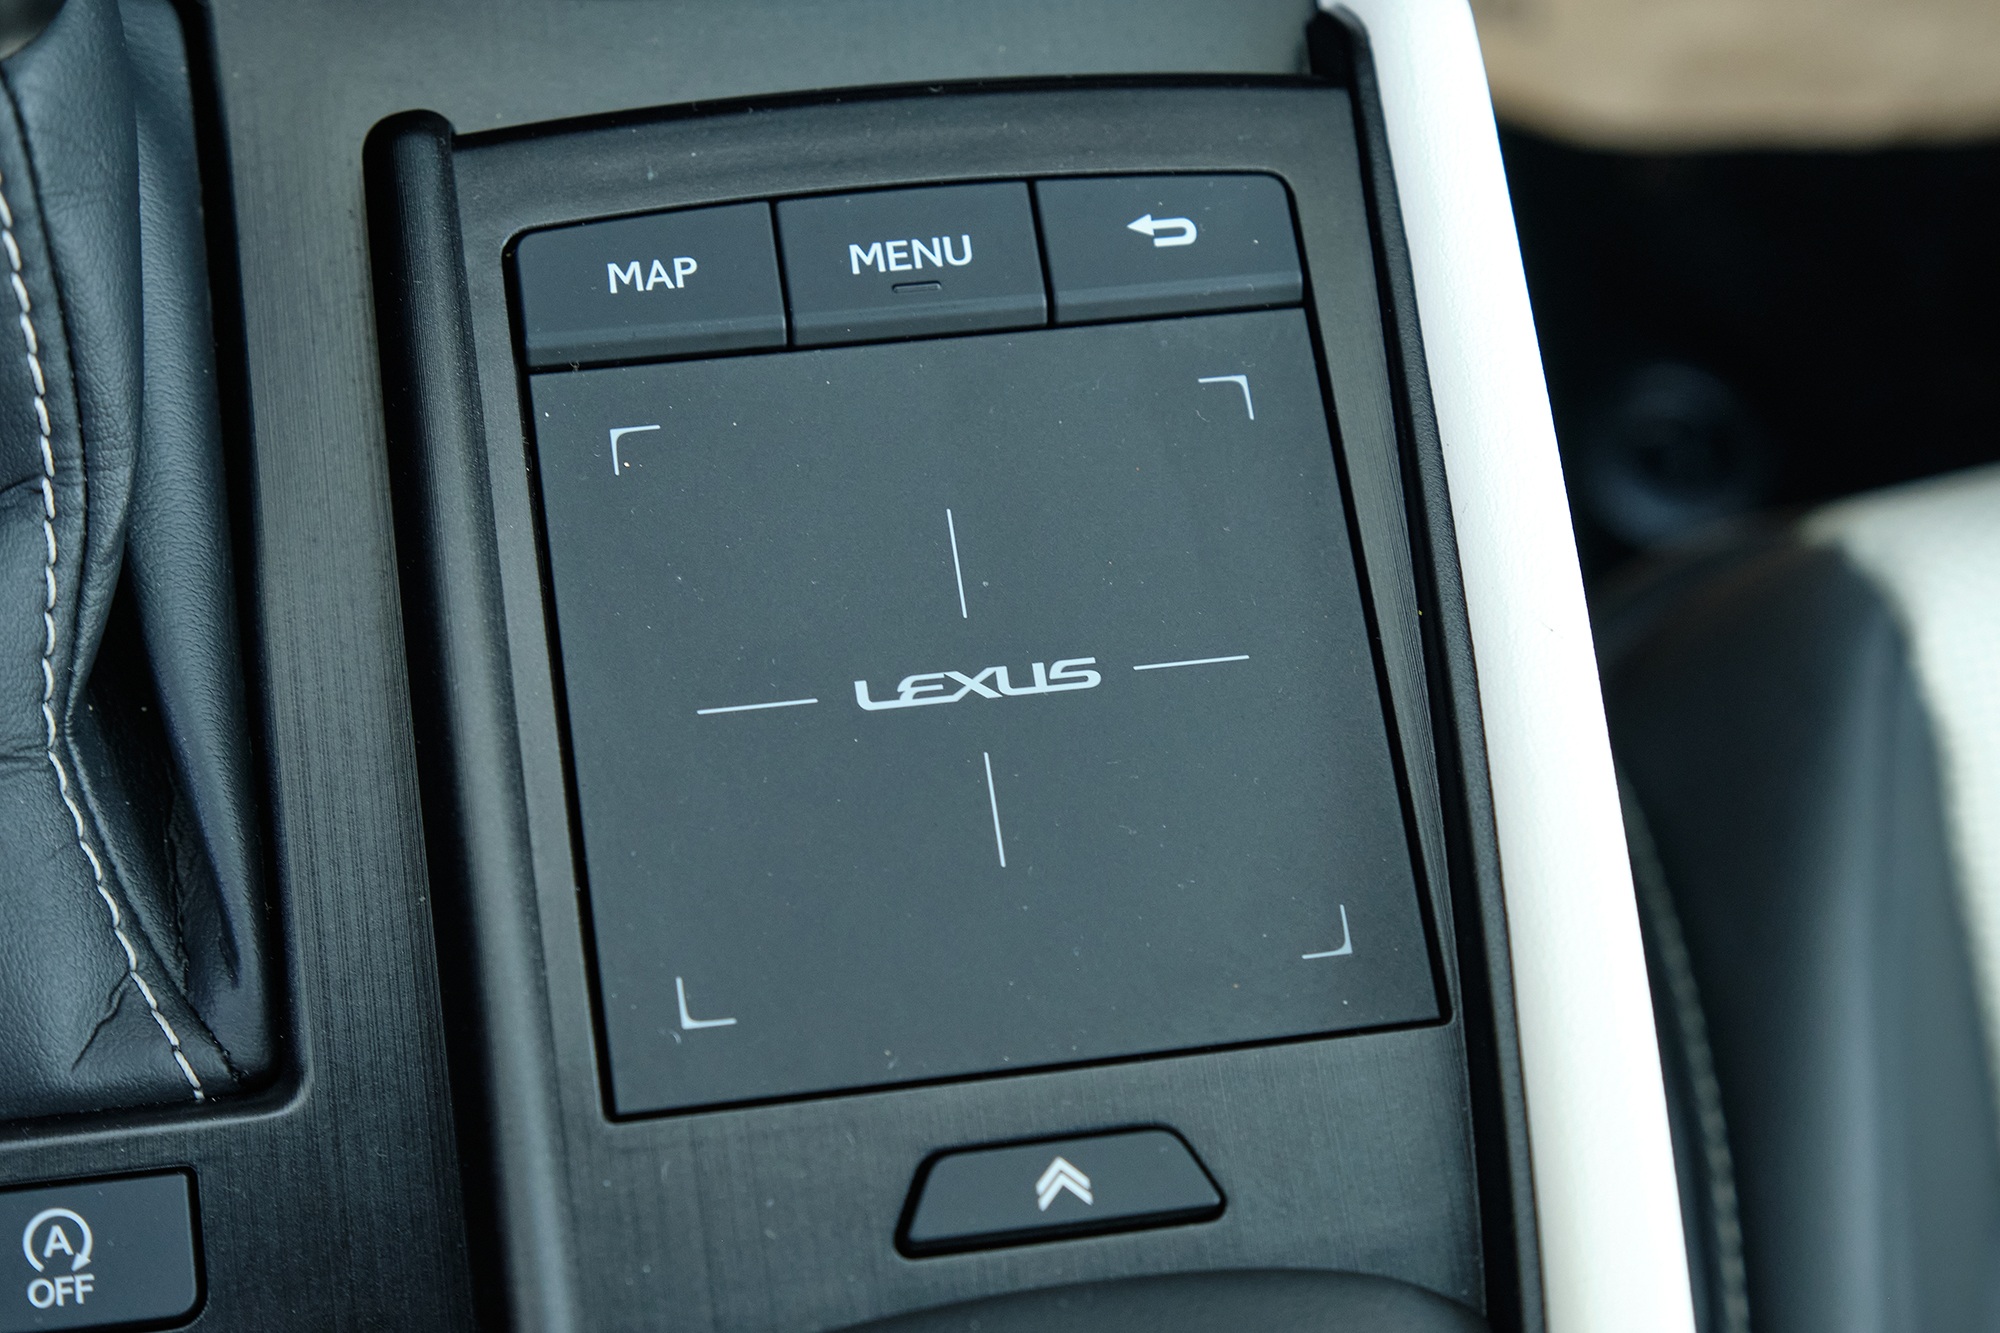 Trải nghiệm Lexus ES 250 F Sport: Lái hay hơn nhưng vẫn thiếu chút để đã - 20